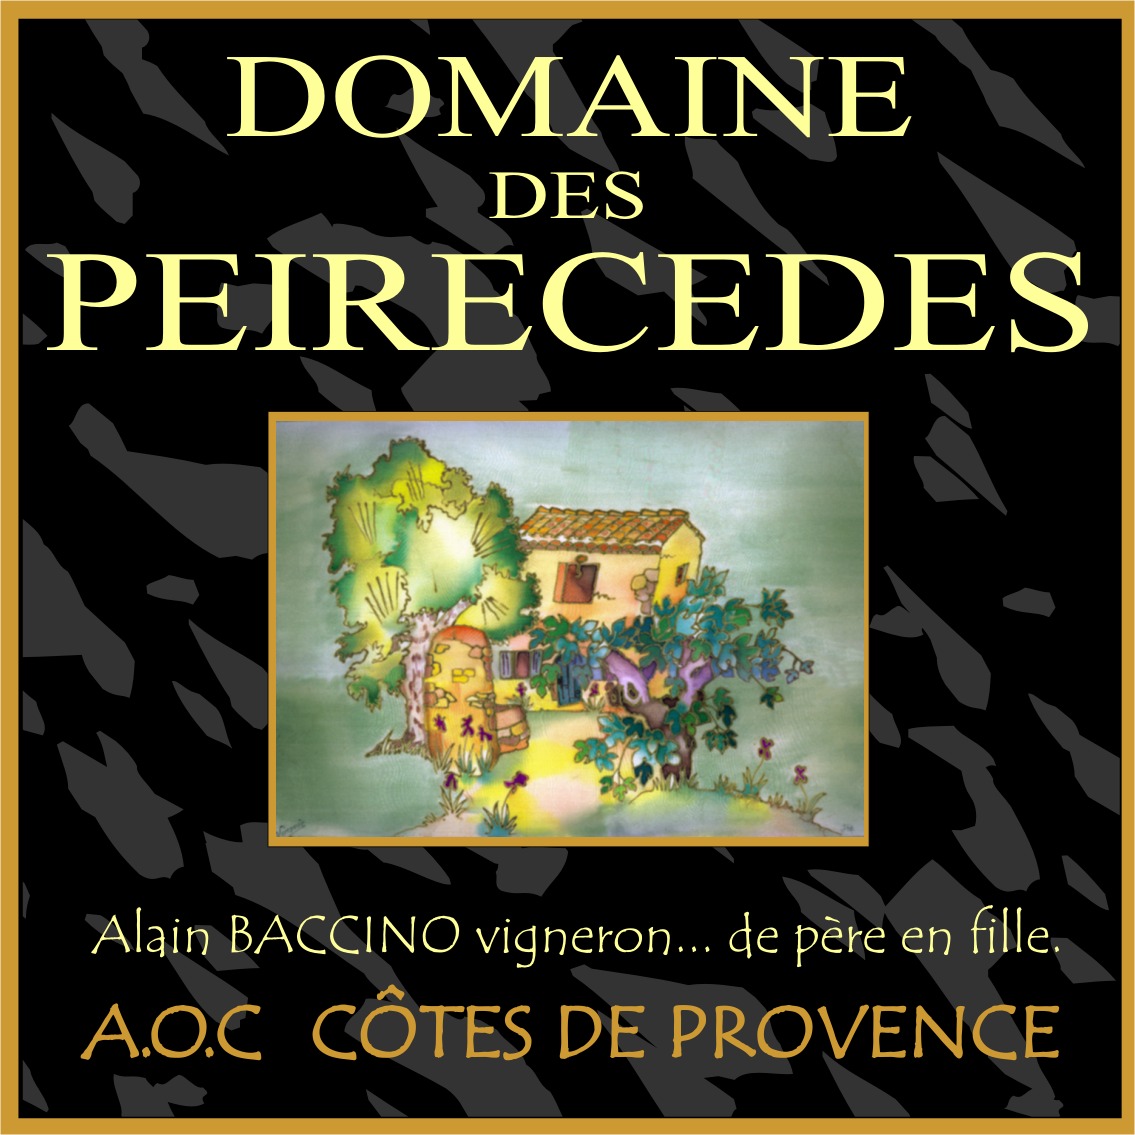 Le DOMAINE des PEIRECEDES  Alain Baccino, vigneron indépendant, vous propose de découvrir ses vins AOC Côtes de Provence - sa boutique - ses partenaires - les arts et le tourisme au domaine ...